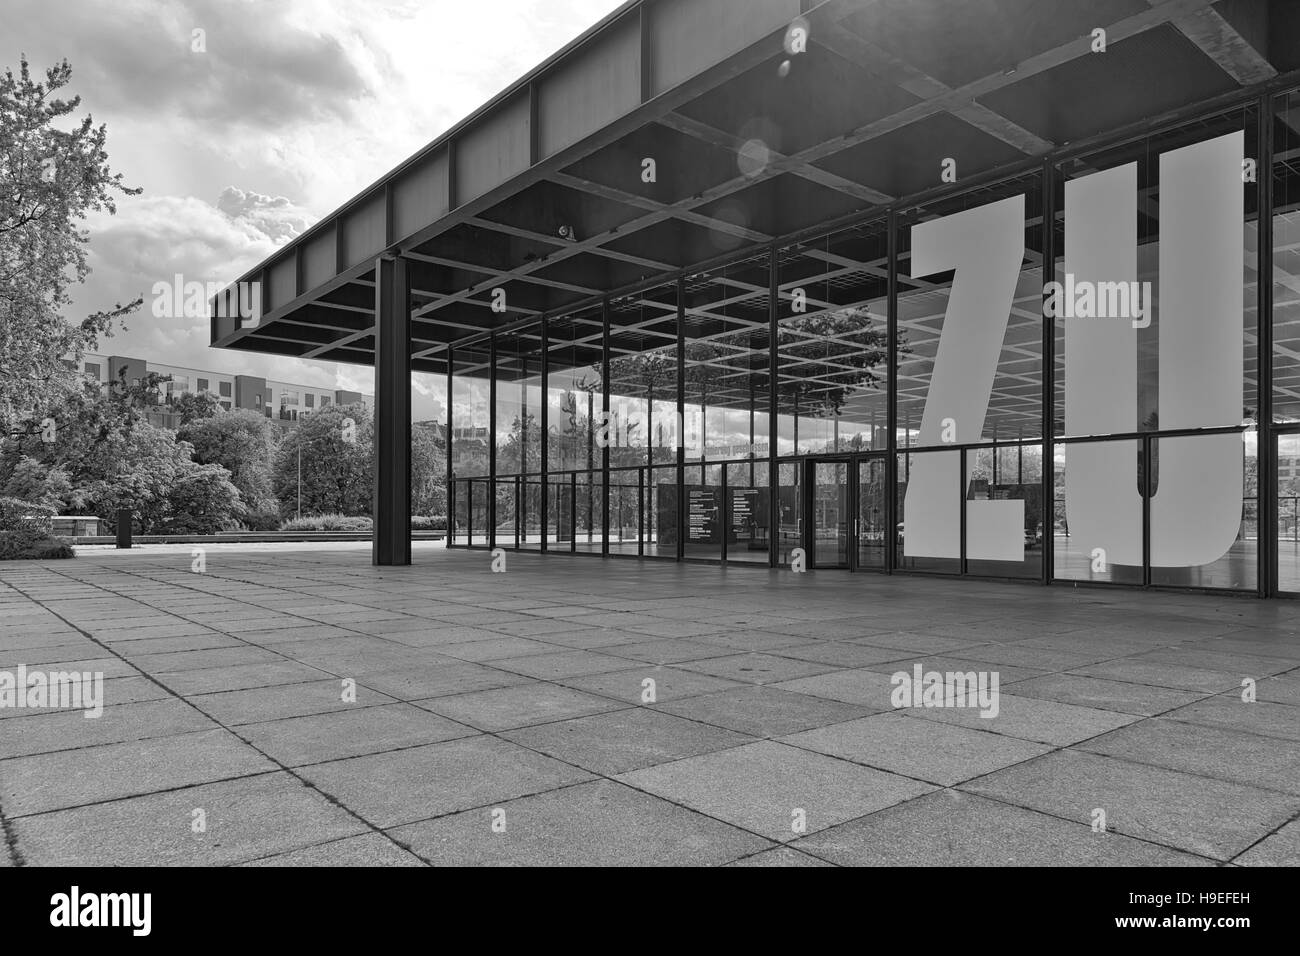 Berlino, Germania - Luglio 2015: vista esterna della Neue Nationalgalerie galleria d'arte è un capolavoro di architettura moderna progettato da Mies Van Der Foto Stock